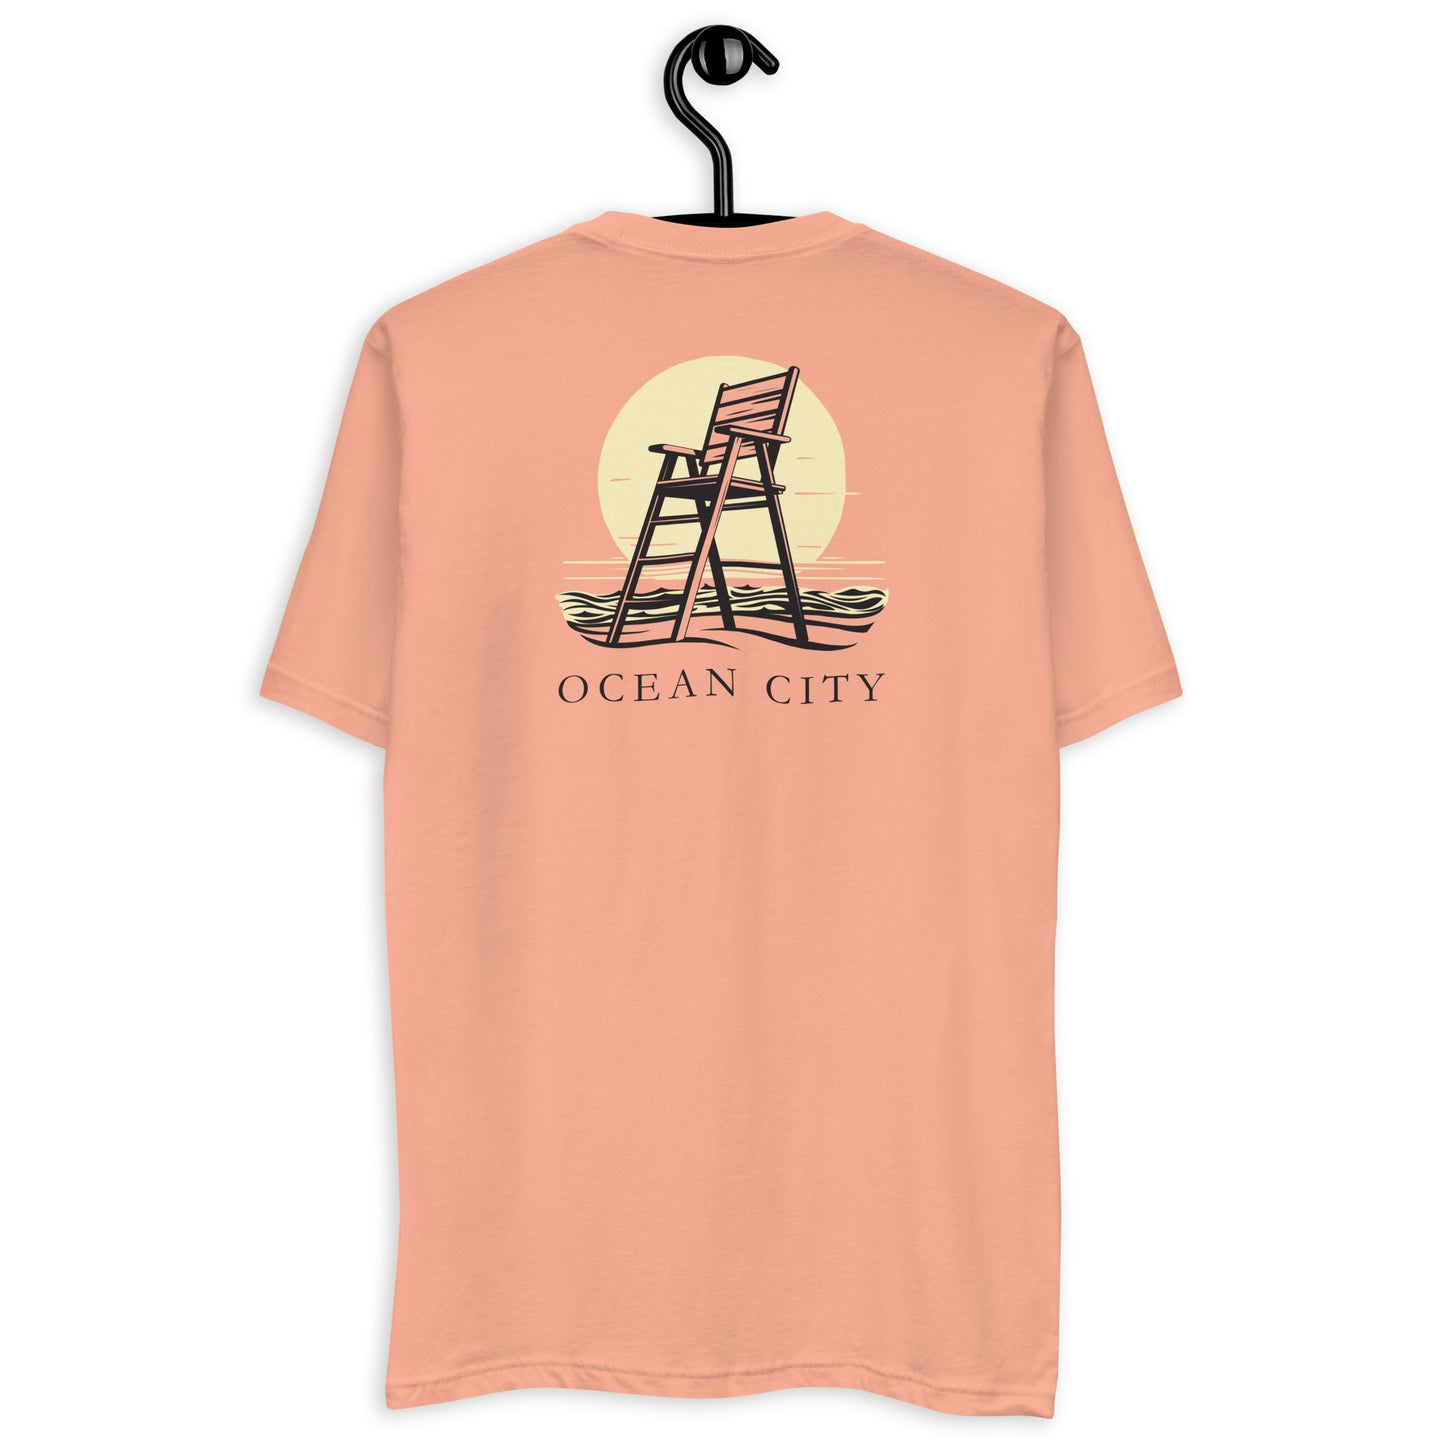 Ocean City 2Clr Short Sleeve T-shirt